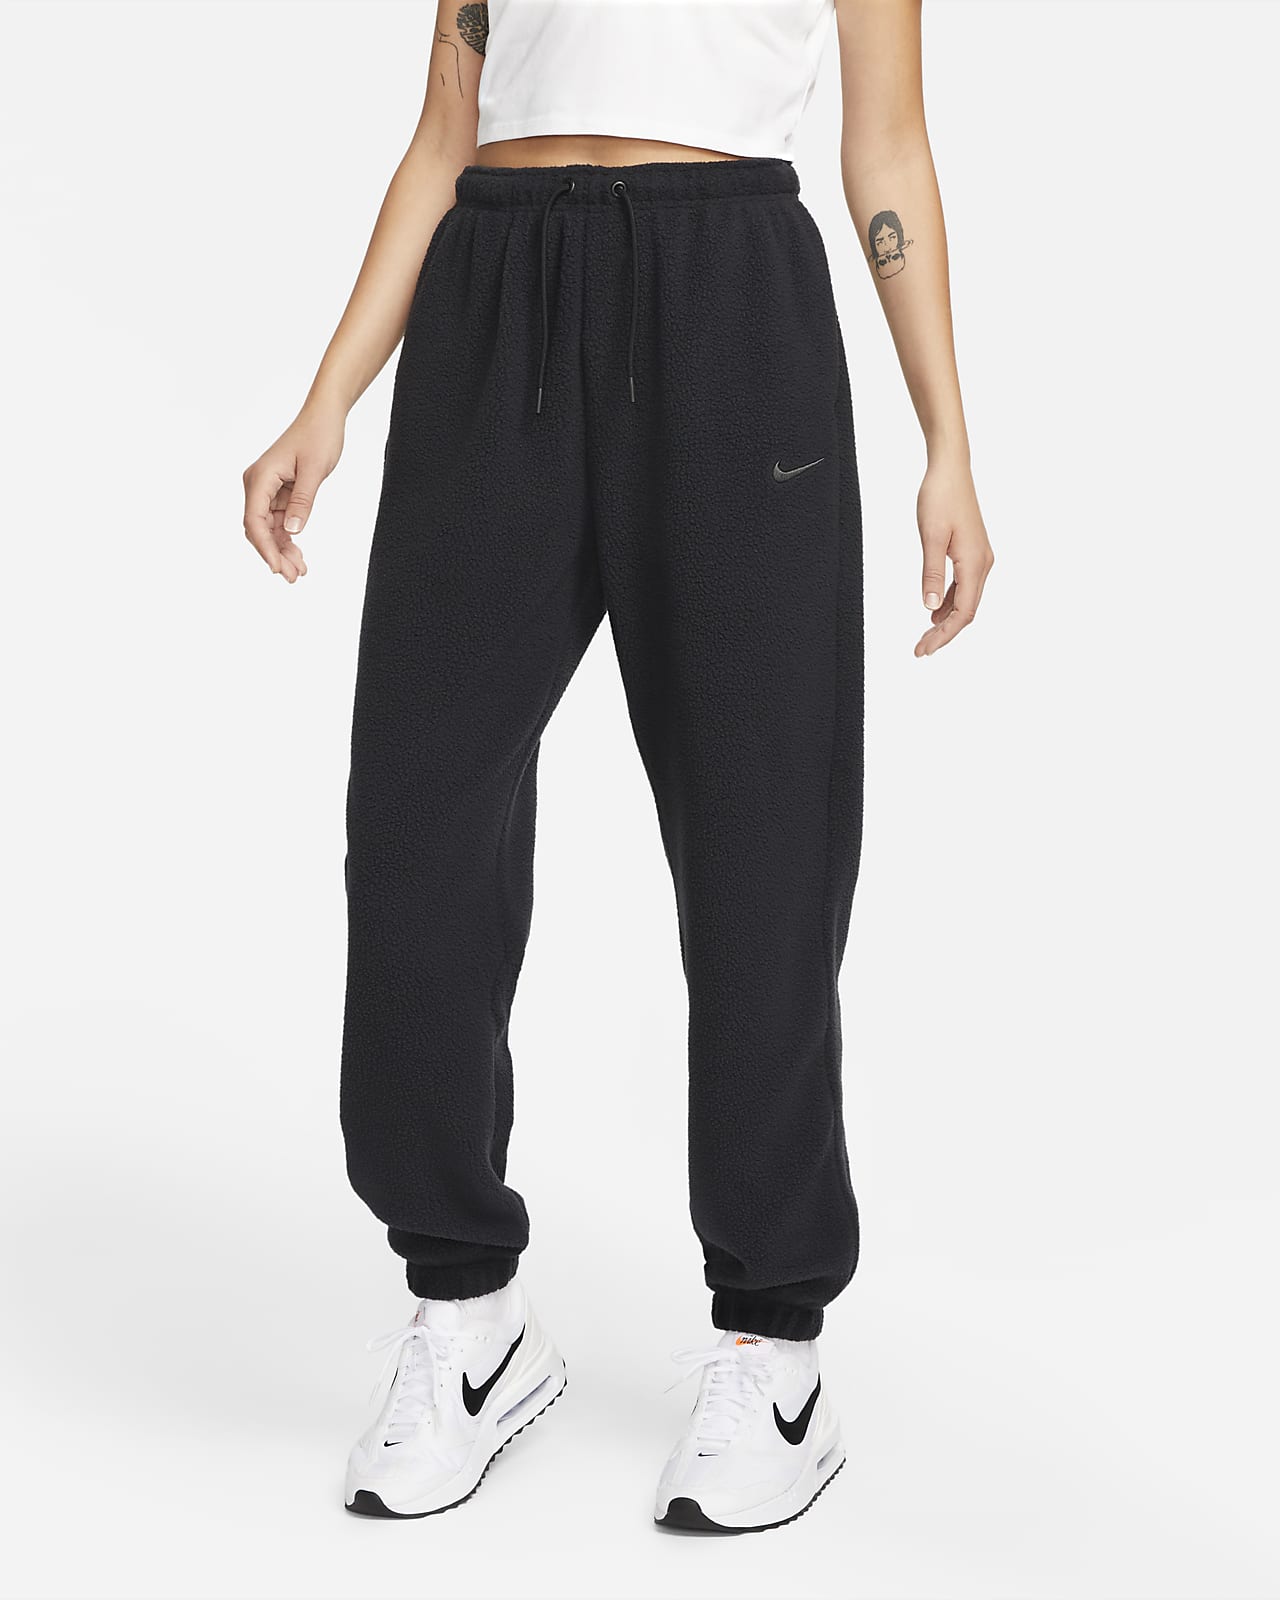 Women's Nike Sportswear Essential Jogger Pants  Jogger pants outfit, Nike  joggers outfit, Nike sweatpants